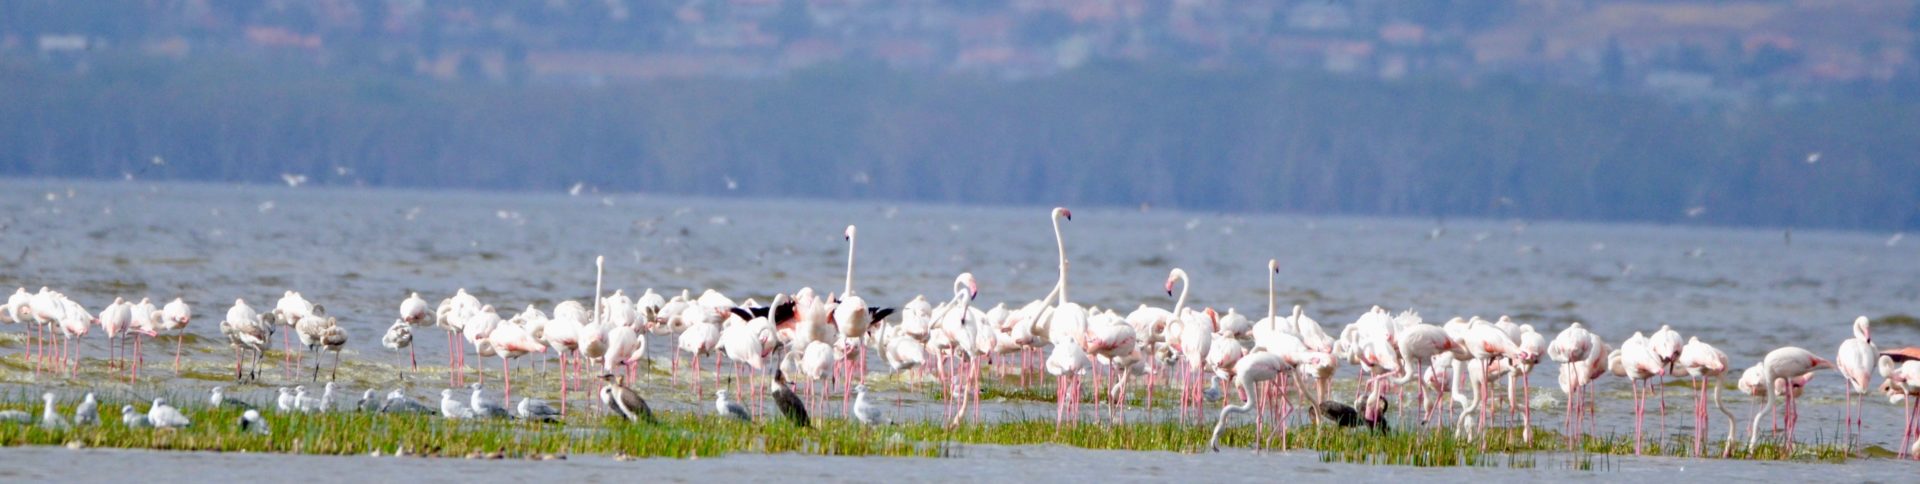 Lake Nahuru Flamingos 